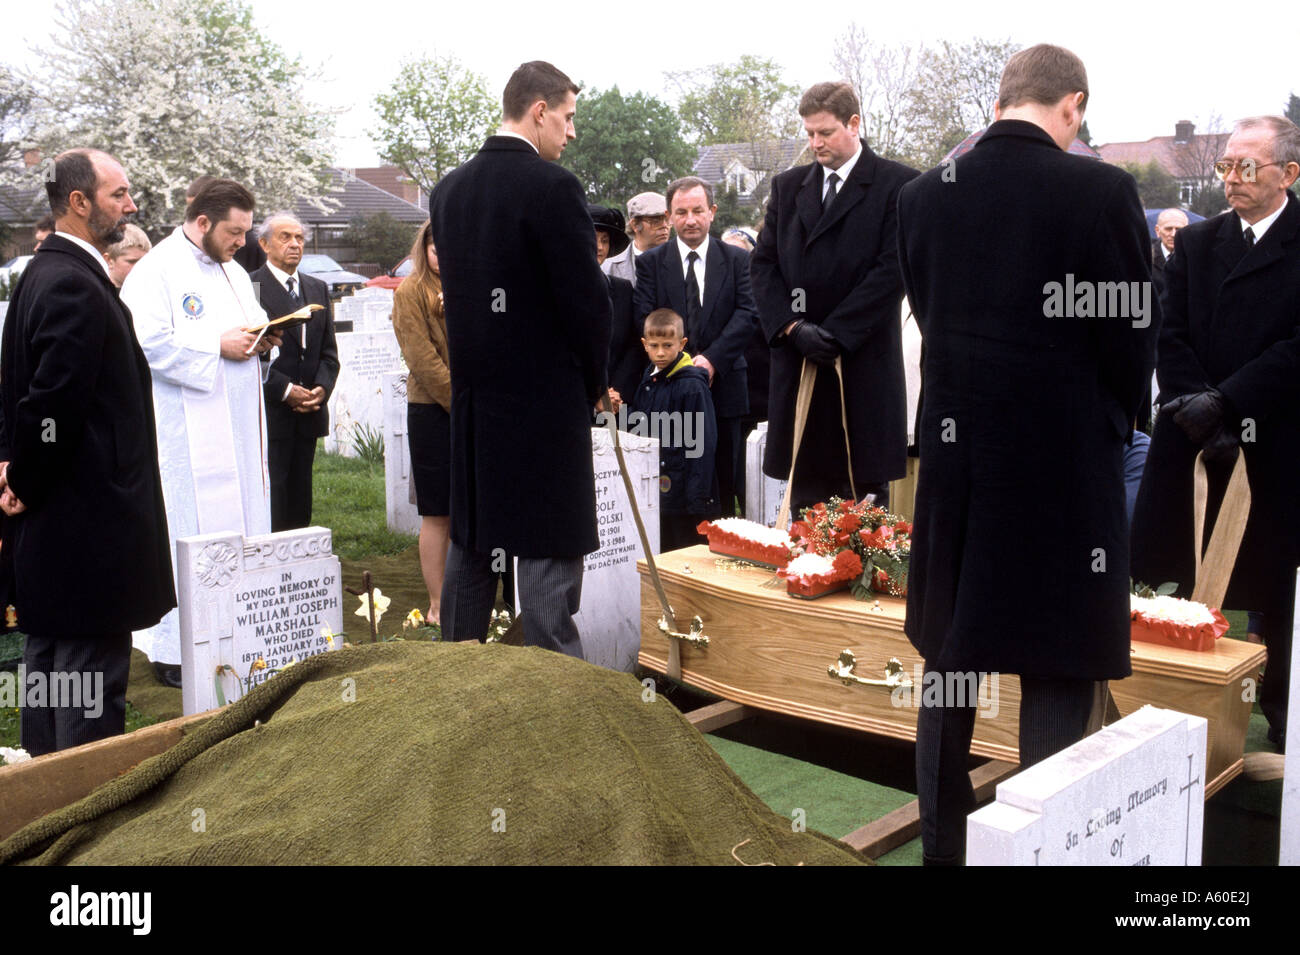 Burial scene in church cemetery Stock Photo